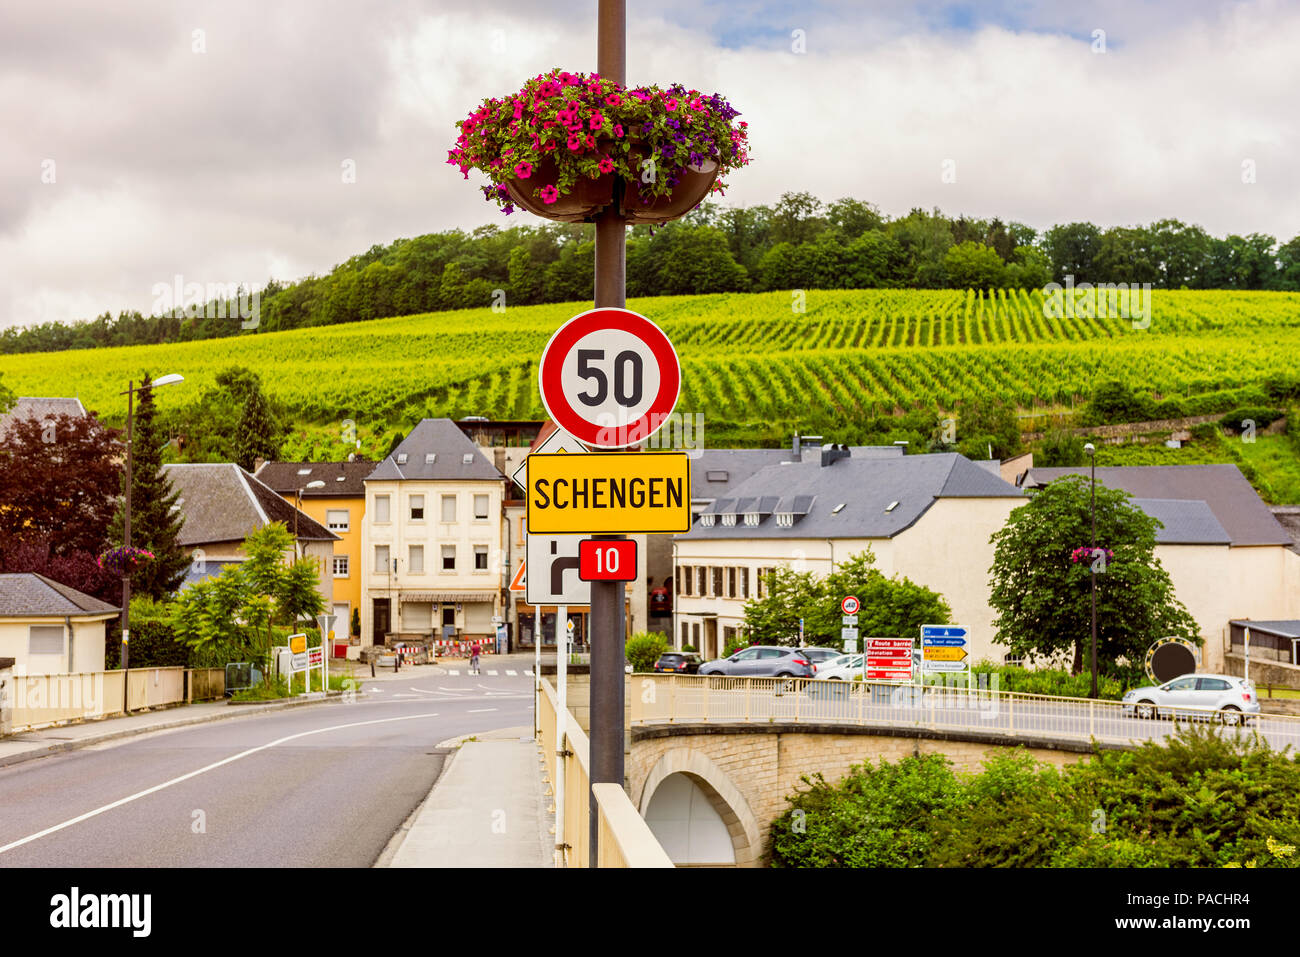 Señal de entrada a Schengen, Luxemburgo. Schengen es mejor conocido por el Acuerdo de Schengen, firmado en 1985 Foto de stock